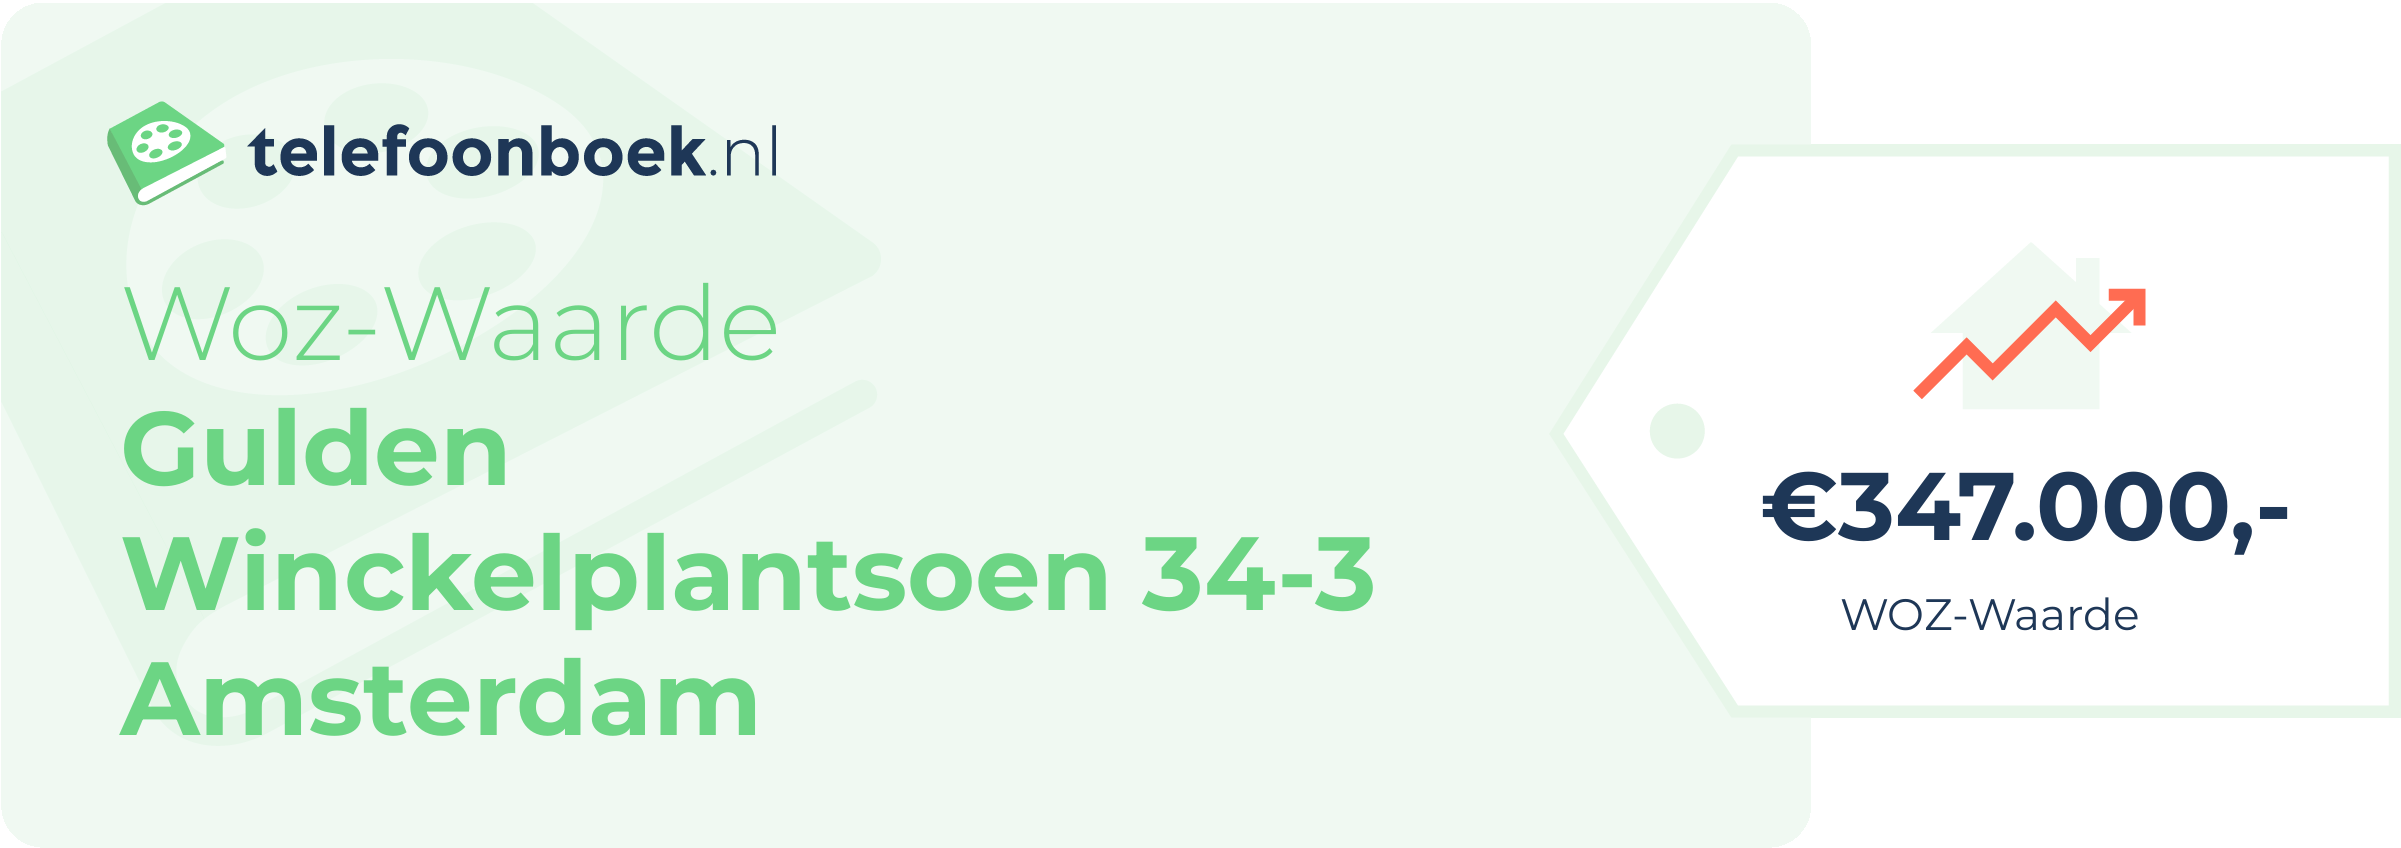 WOZ-waarde Gulden Winckelplantsoen 34-3 Amsterdam